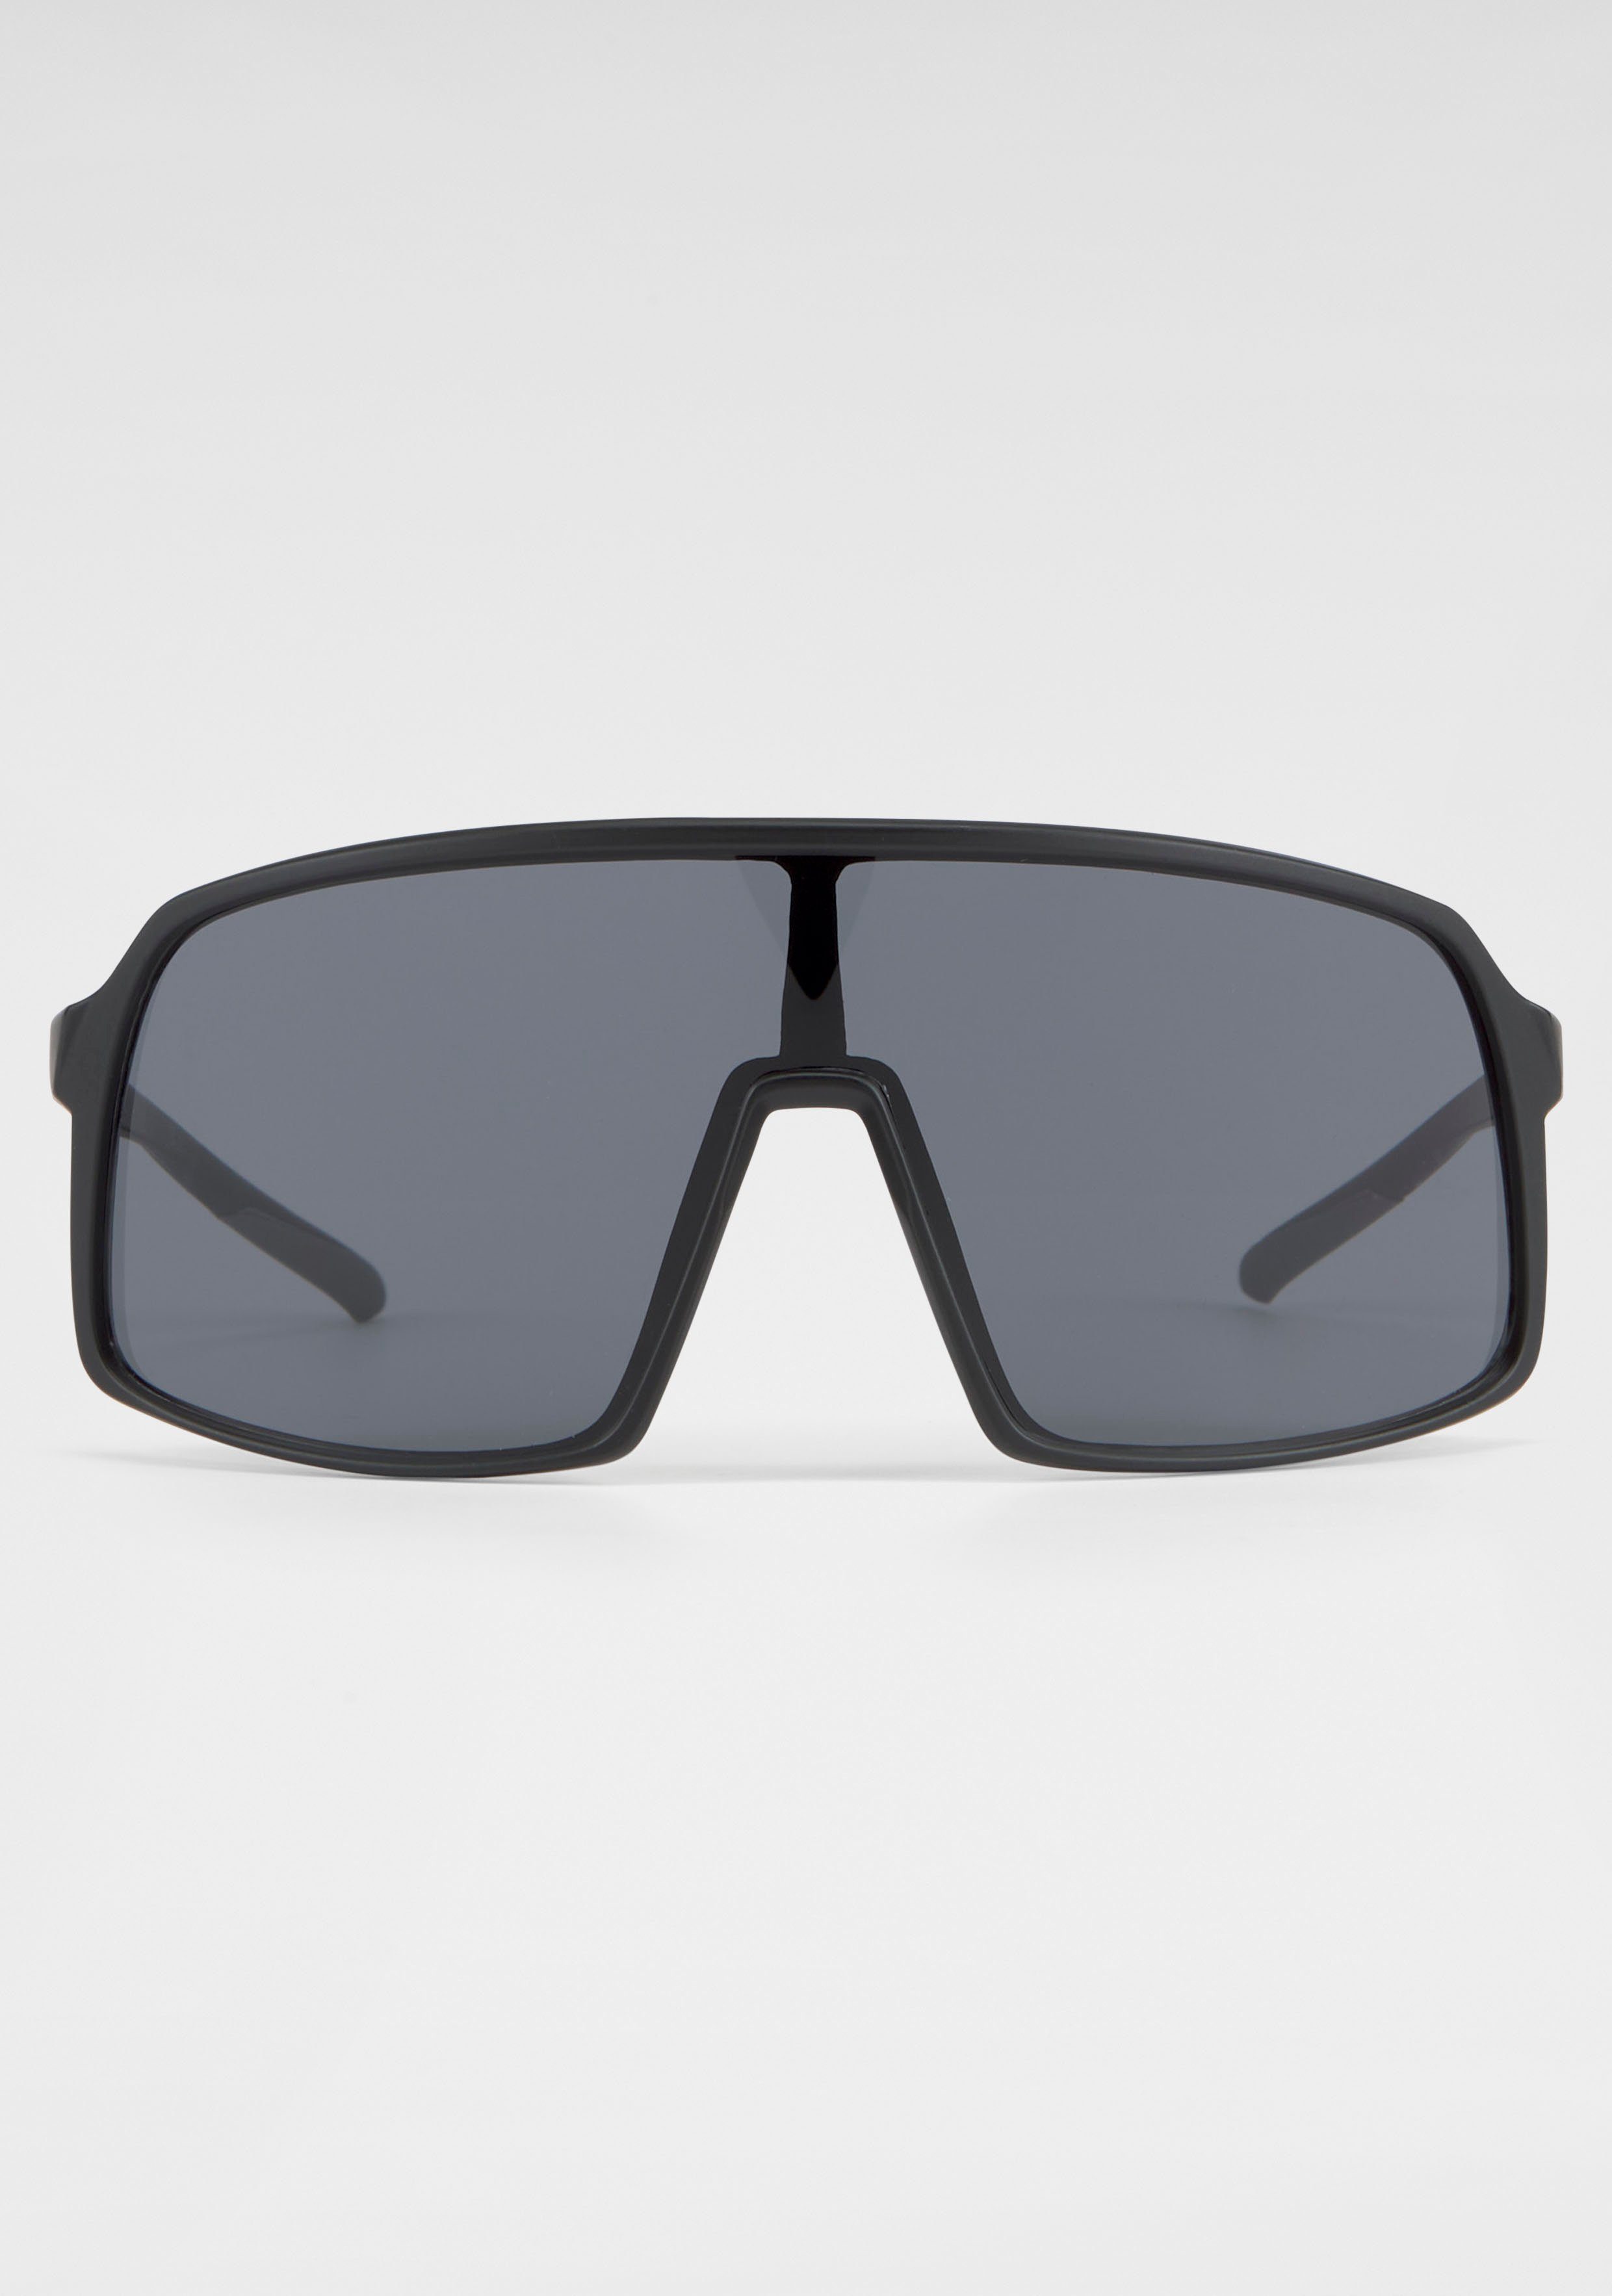 BACK IN BLACK Eyewear Sonnenbrille Gläser, große Monoscheibe Verspiegelte